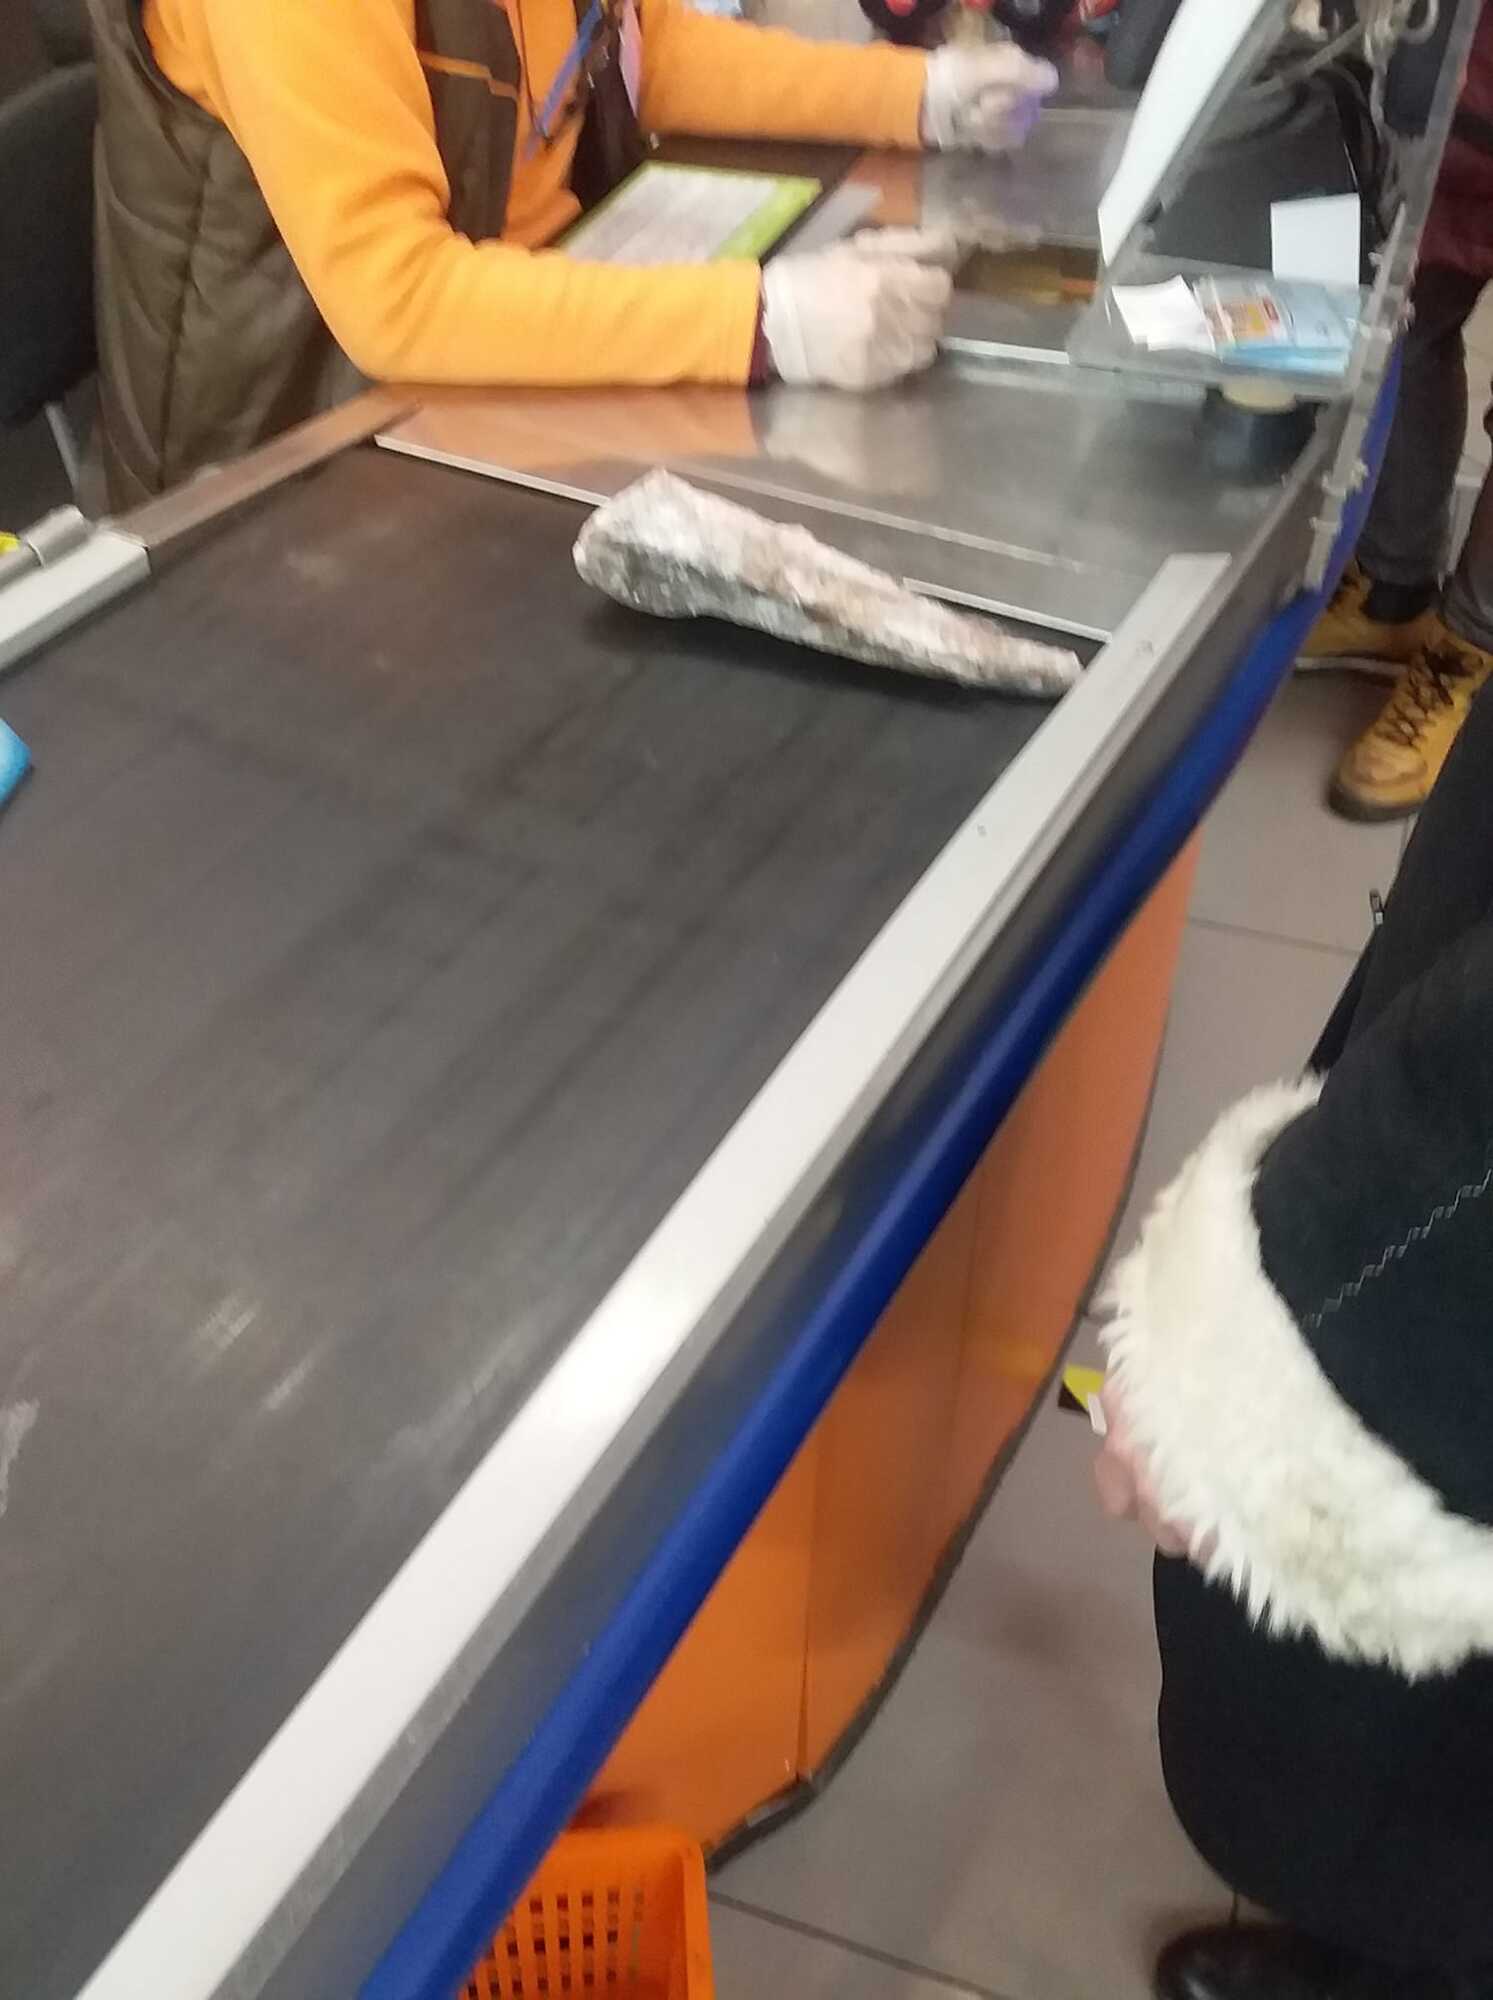 Жінка купила заморожену рибу без поліетиленового пакета, щоб не платити за нього